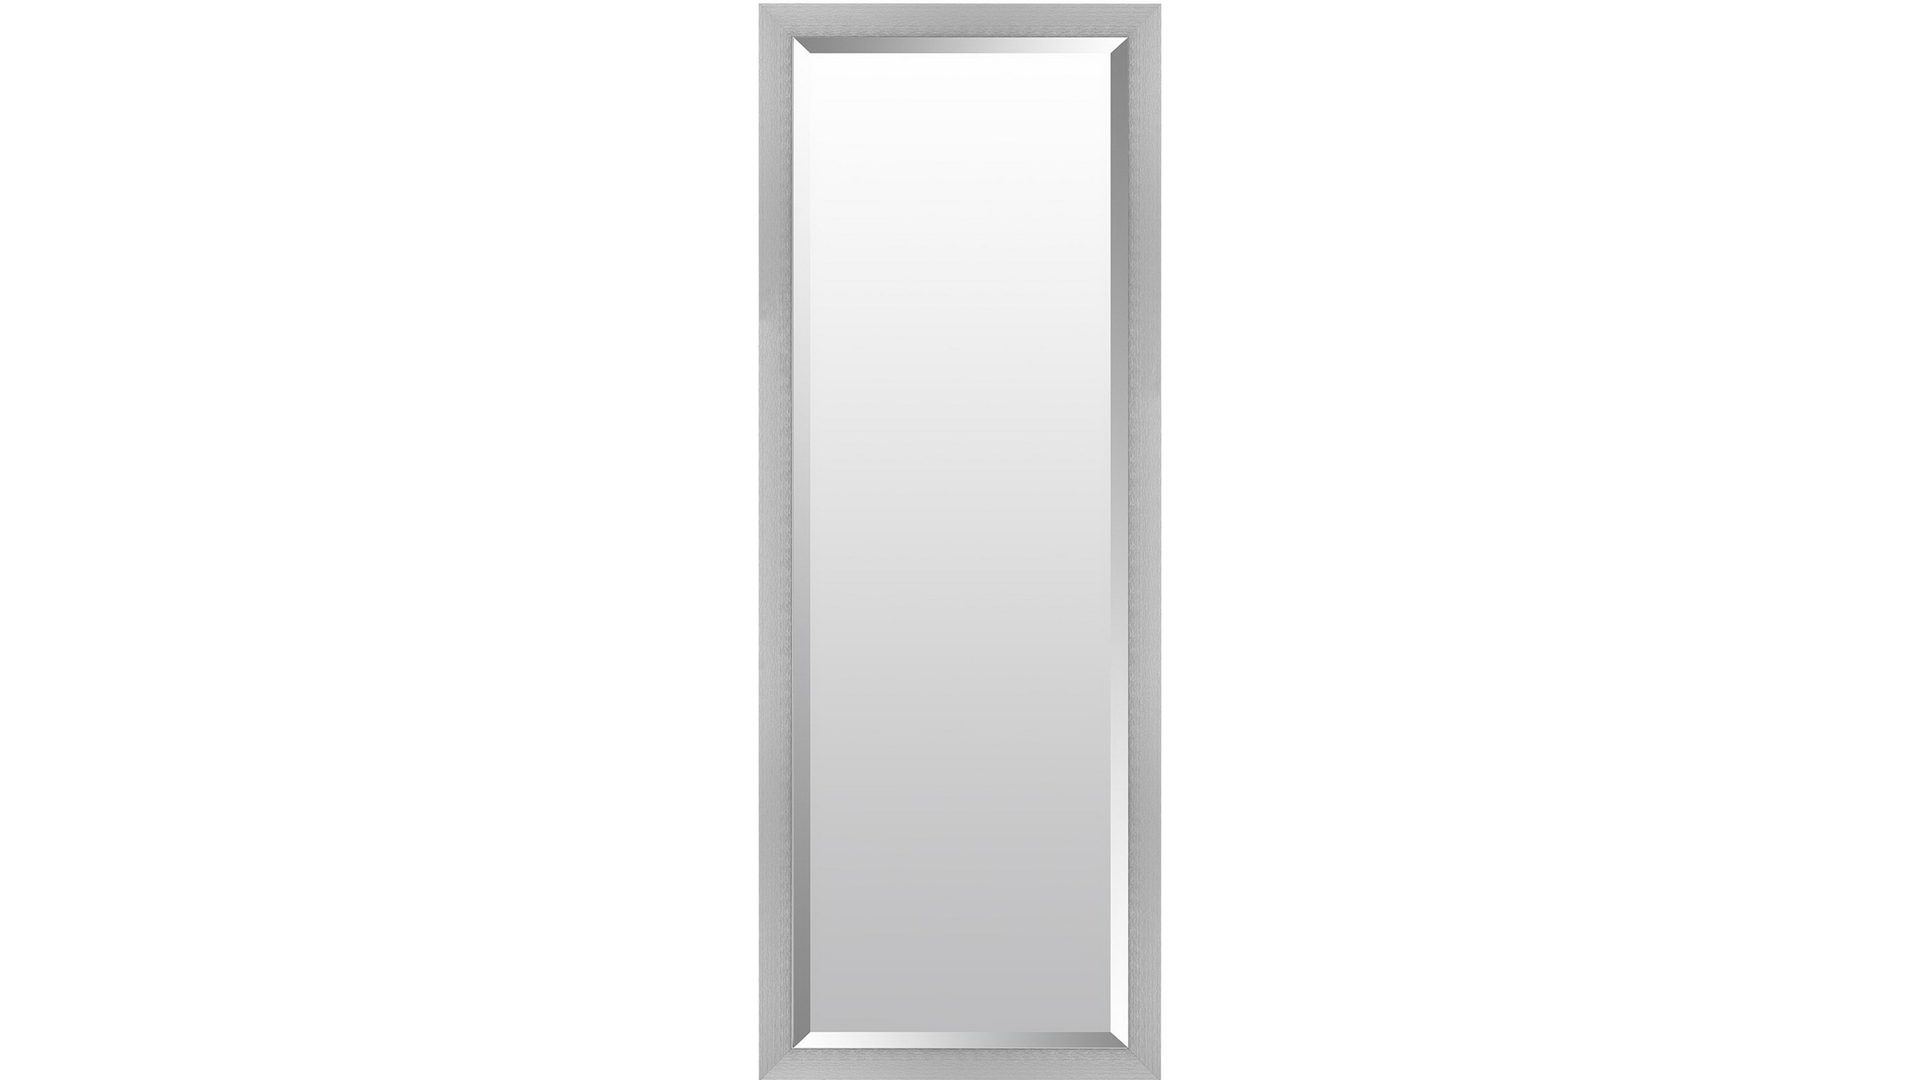 Wandspiegel Len-fra aus Spiegel Aluminium in Aluminium LEN-FRA Spiegel Wandspiegel BRETAGNE 02 Alurahmen - ca. 47 x 147 cm